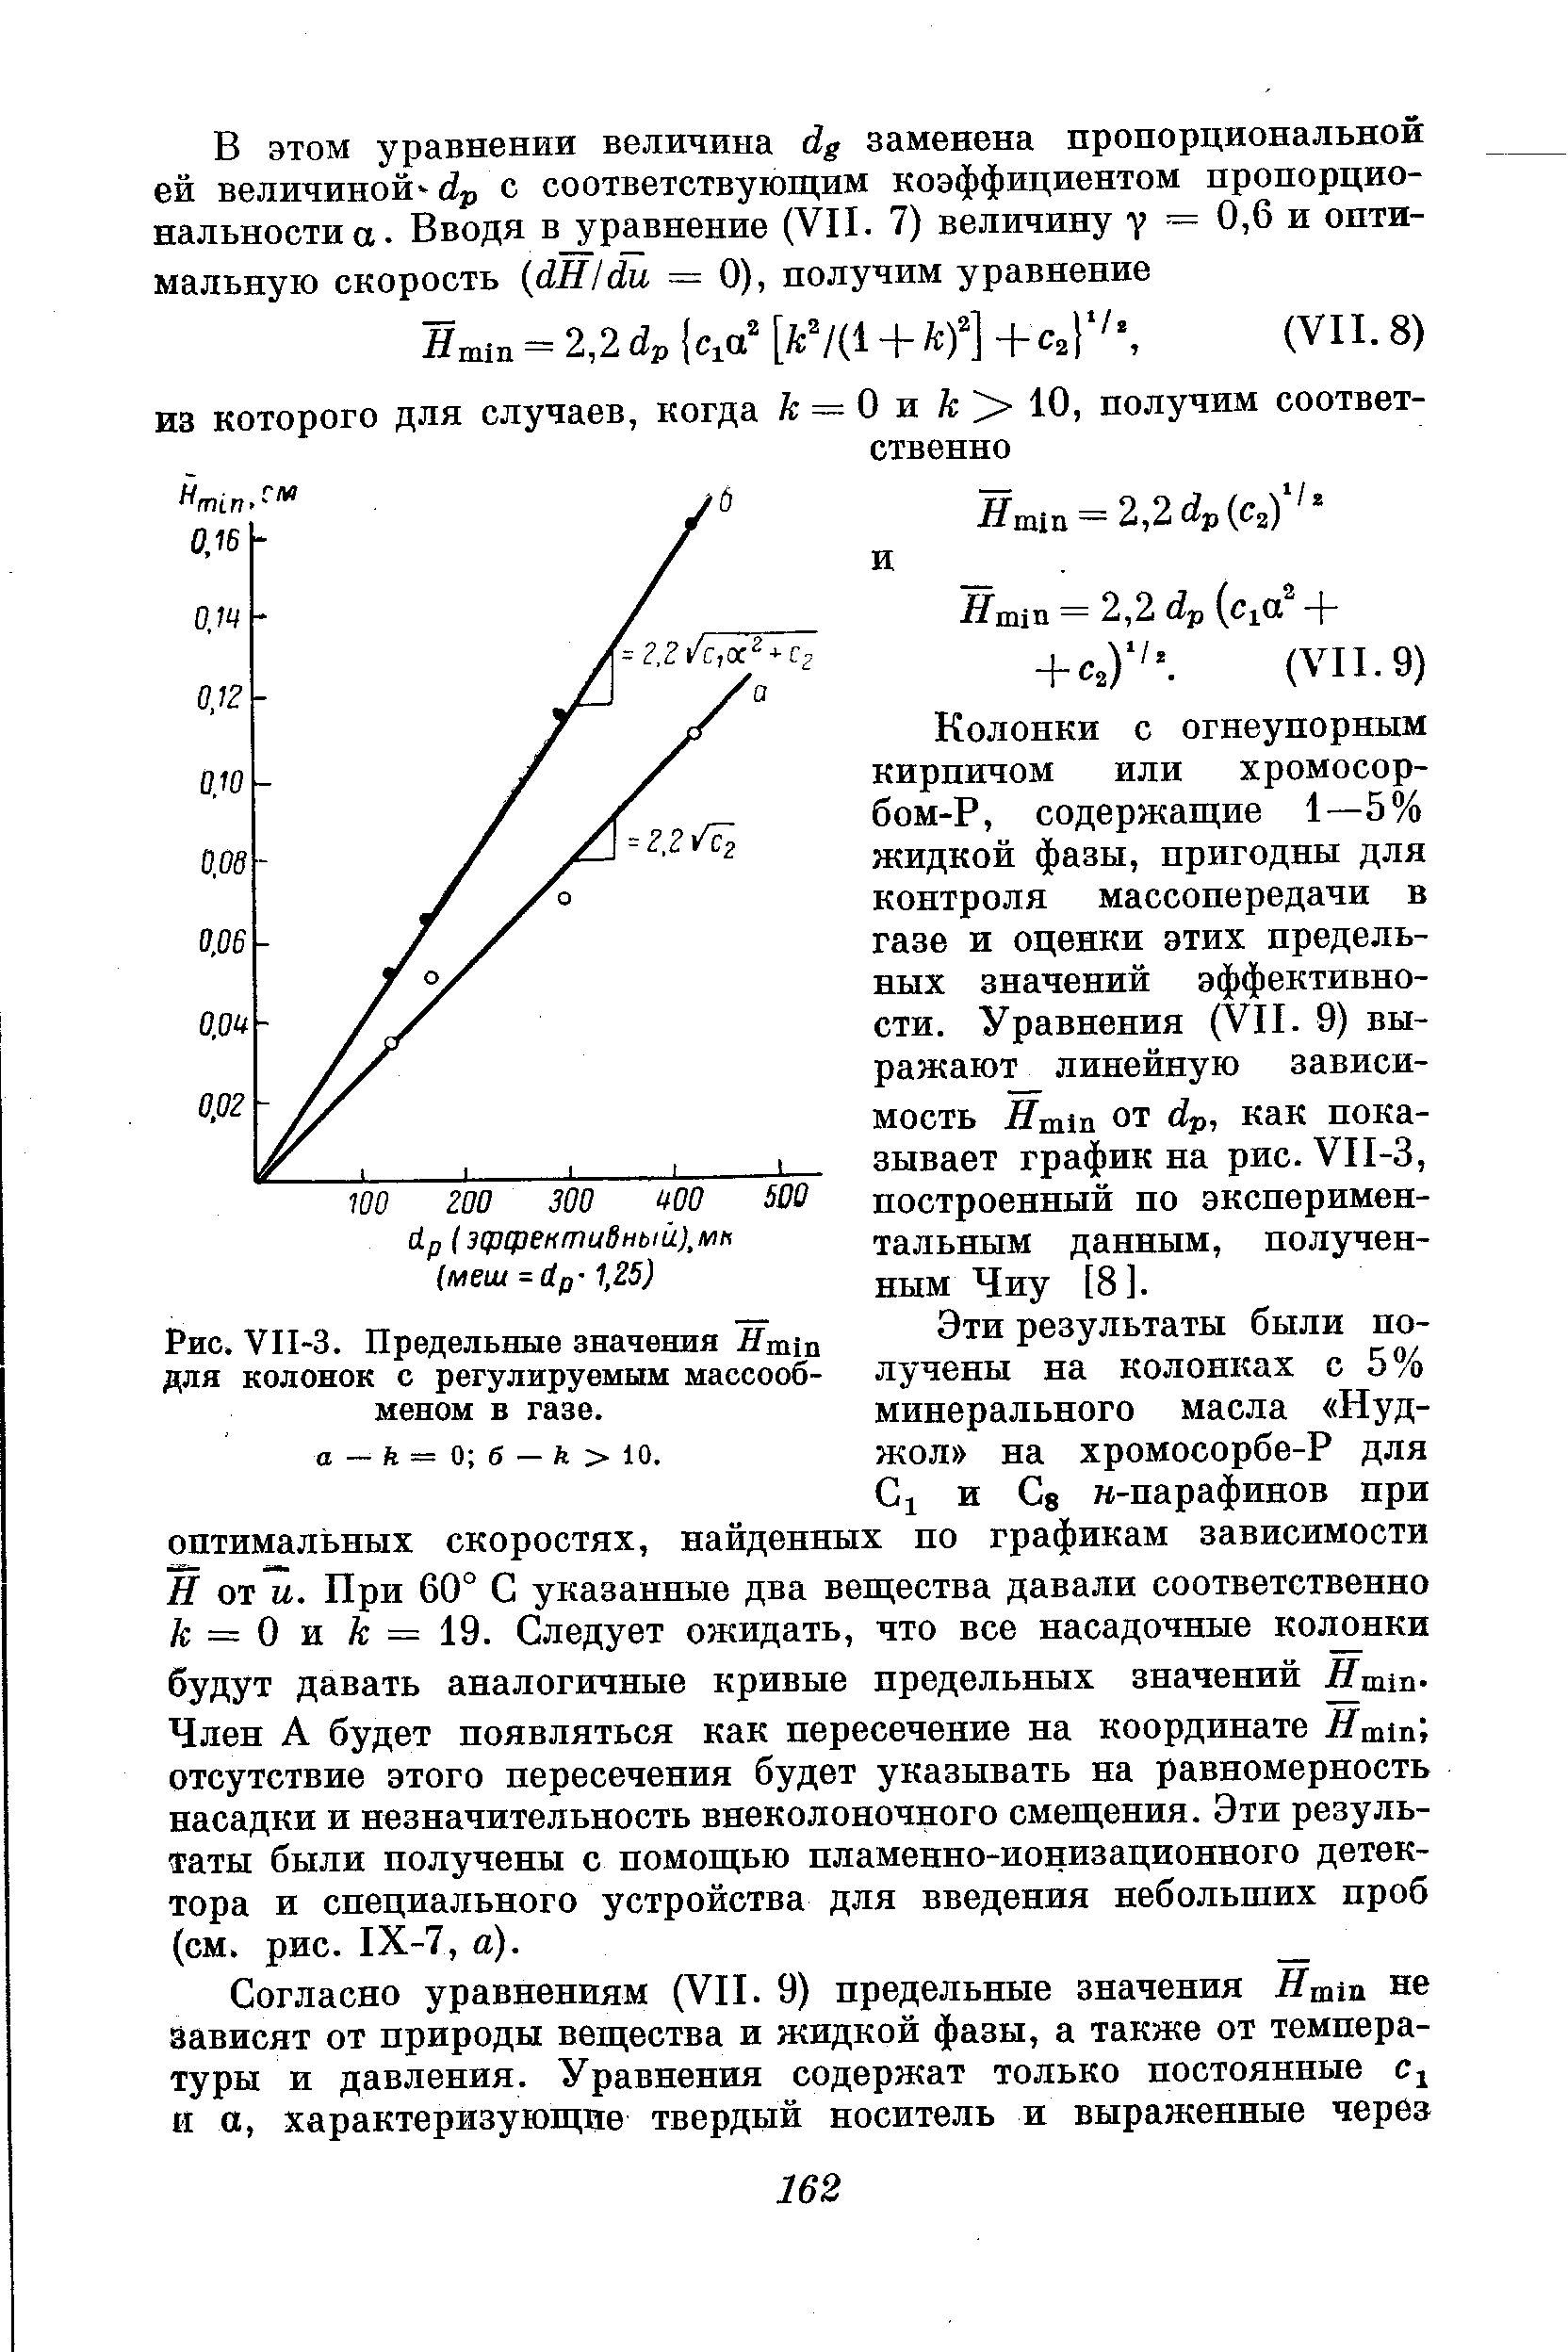 Колонки с огнеупорным кирпичом или хромосорбом-Р, содержащие 1—5% жидкой фазы, пригодны для контроля массопередачи в газе и оценки этих предельных значений эффективности. Уравнения (VII. 9) выражают линейную зависимость Hmin от dp, как показывает график на рис. VII-3, построенный по экспериментальным данным, полученным Чиу [8].